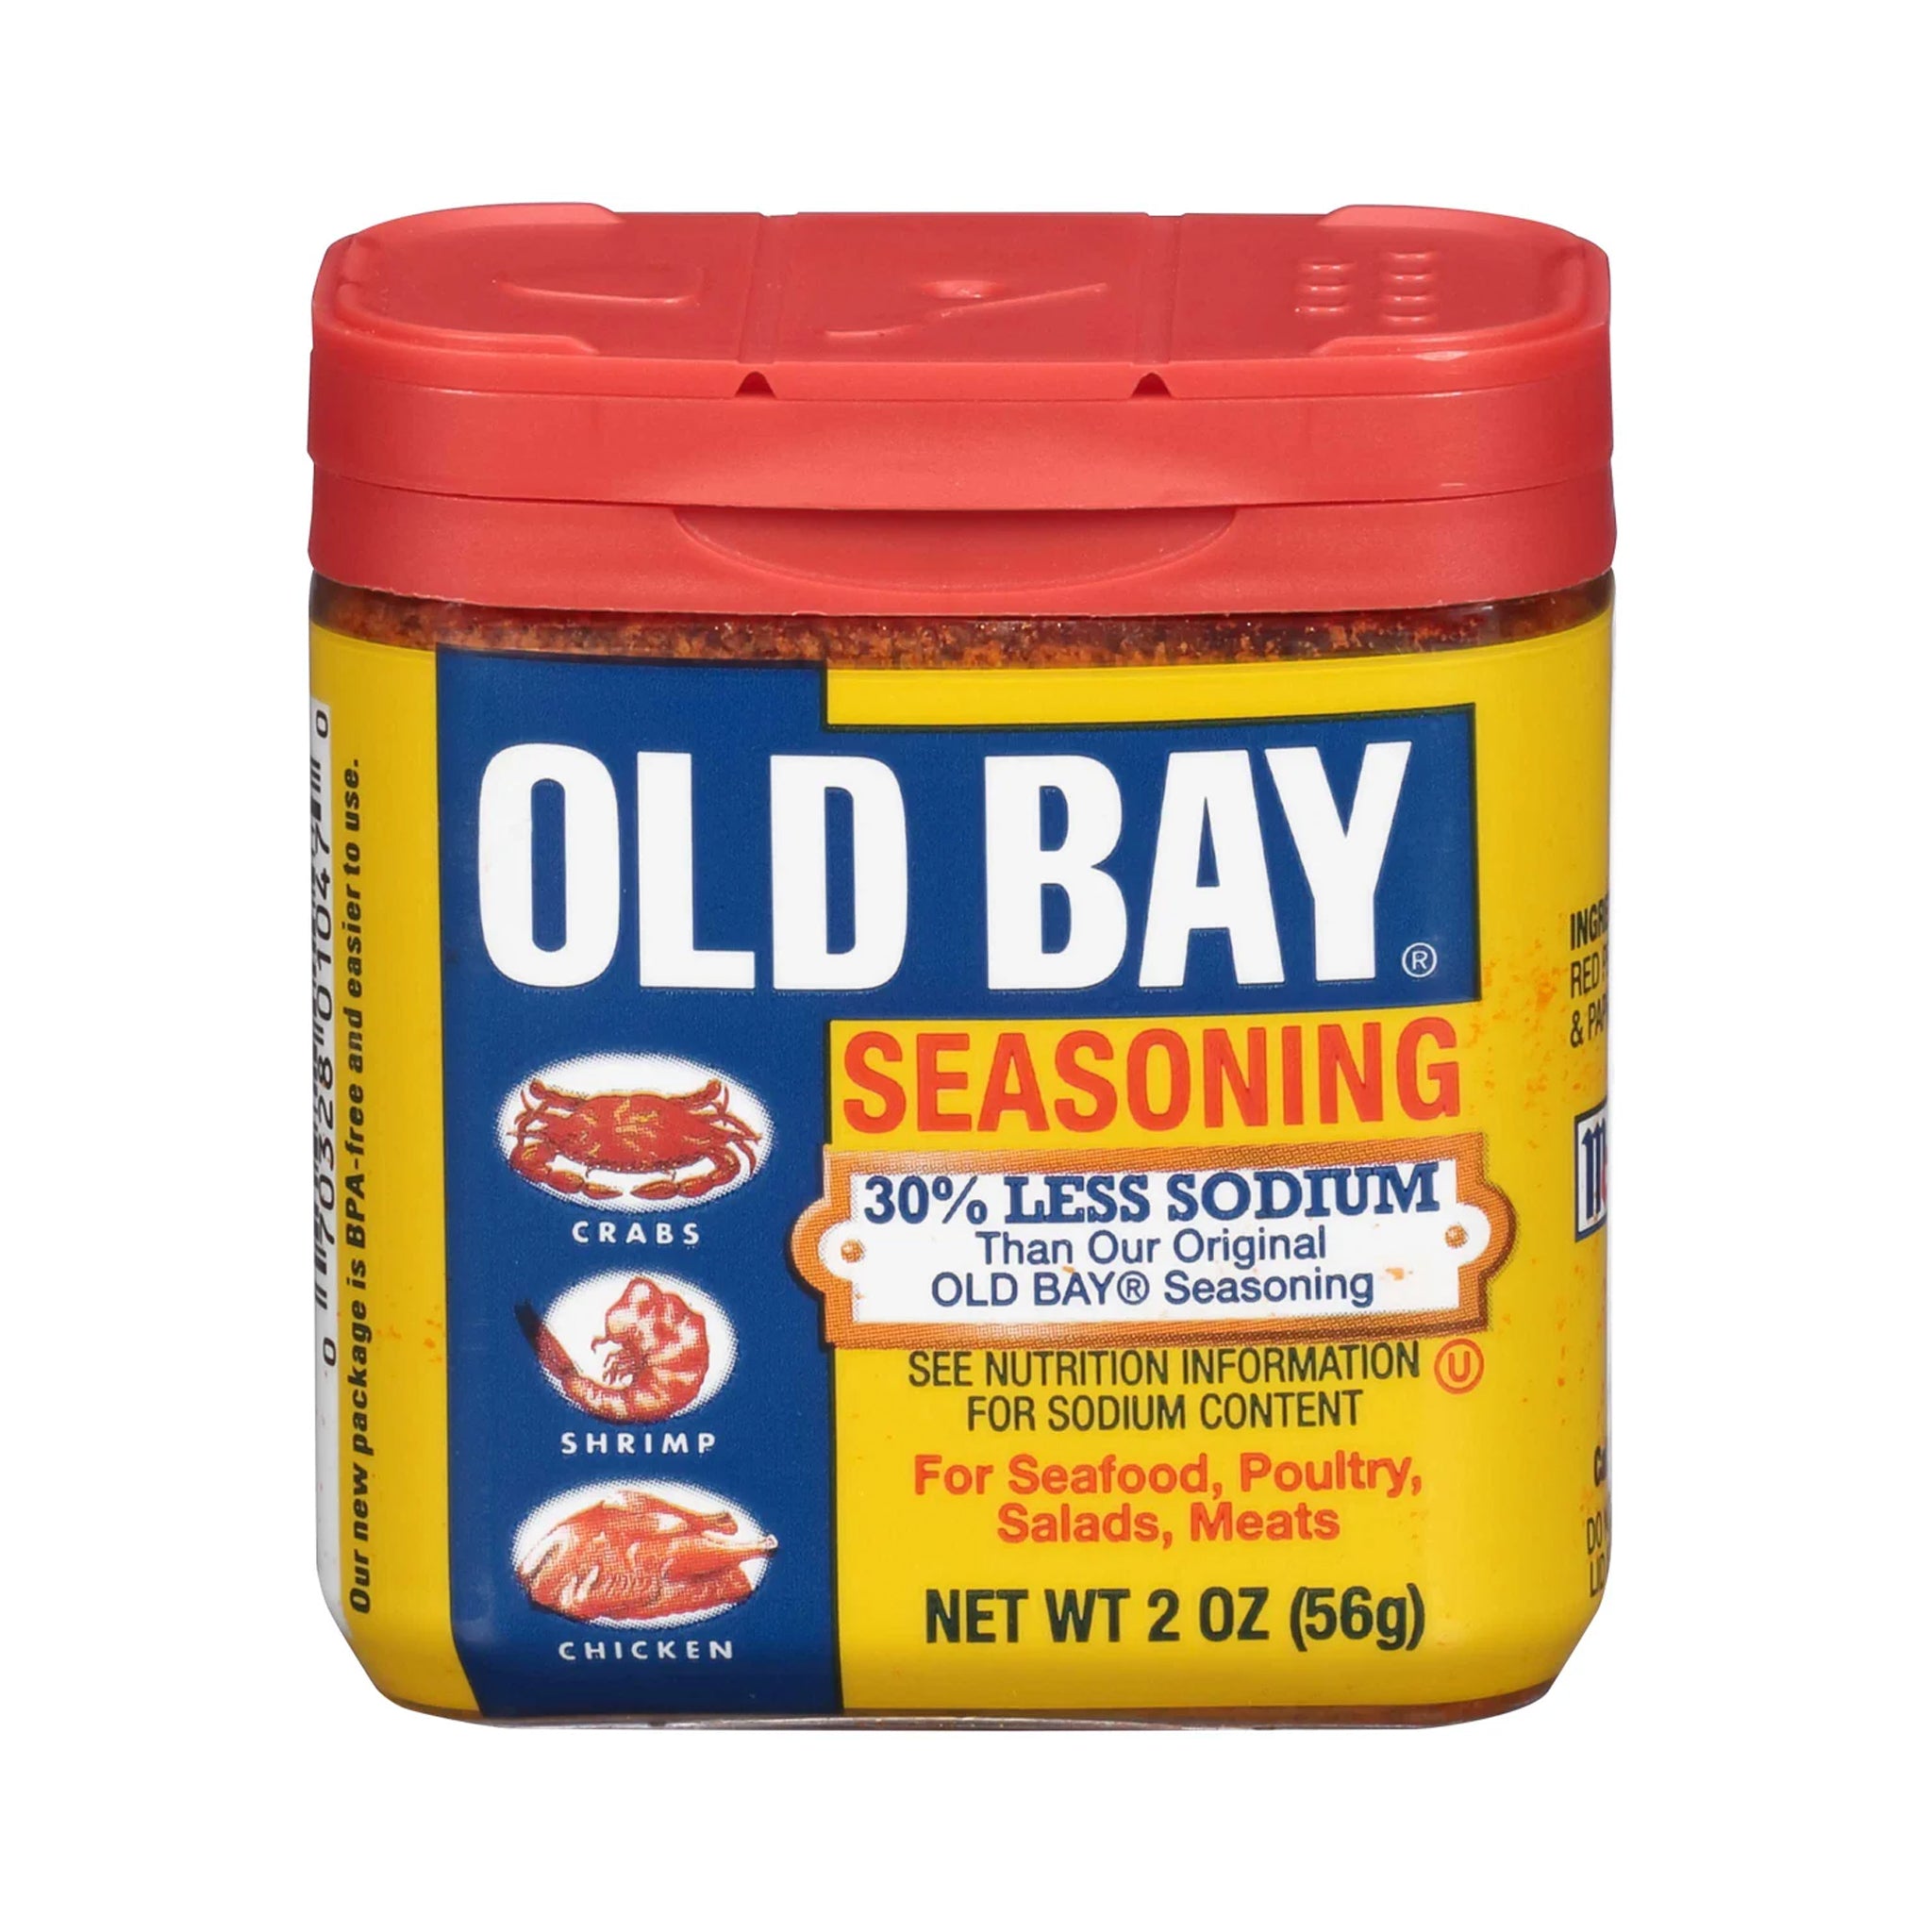 What Is in Old Bay Seasoning That Makes It Taste So Good?